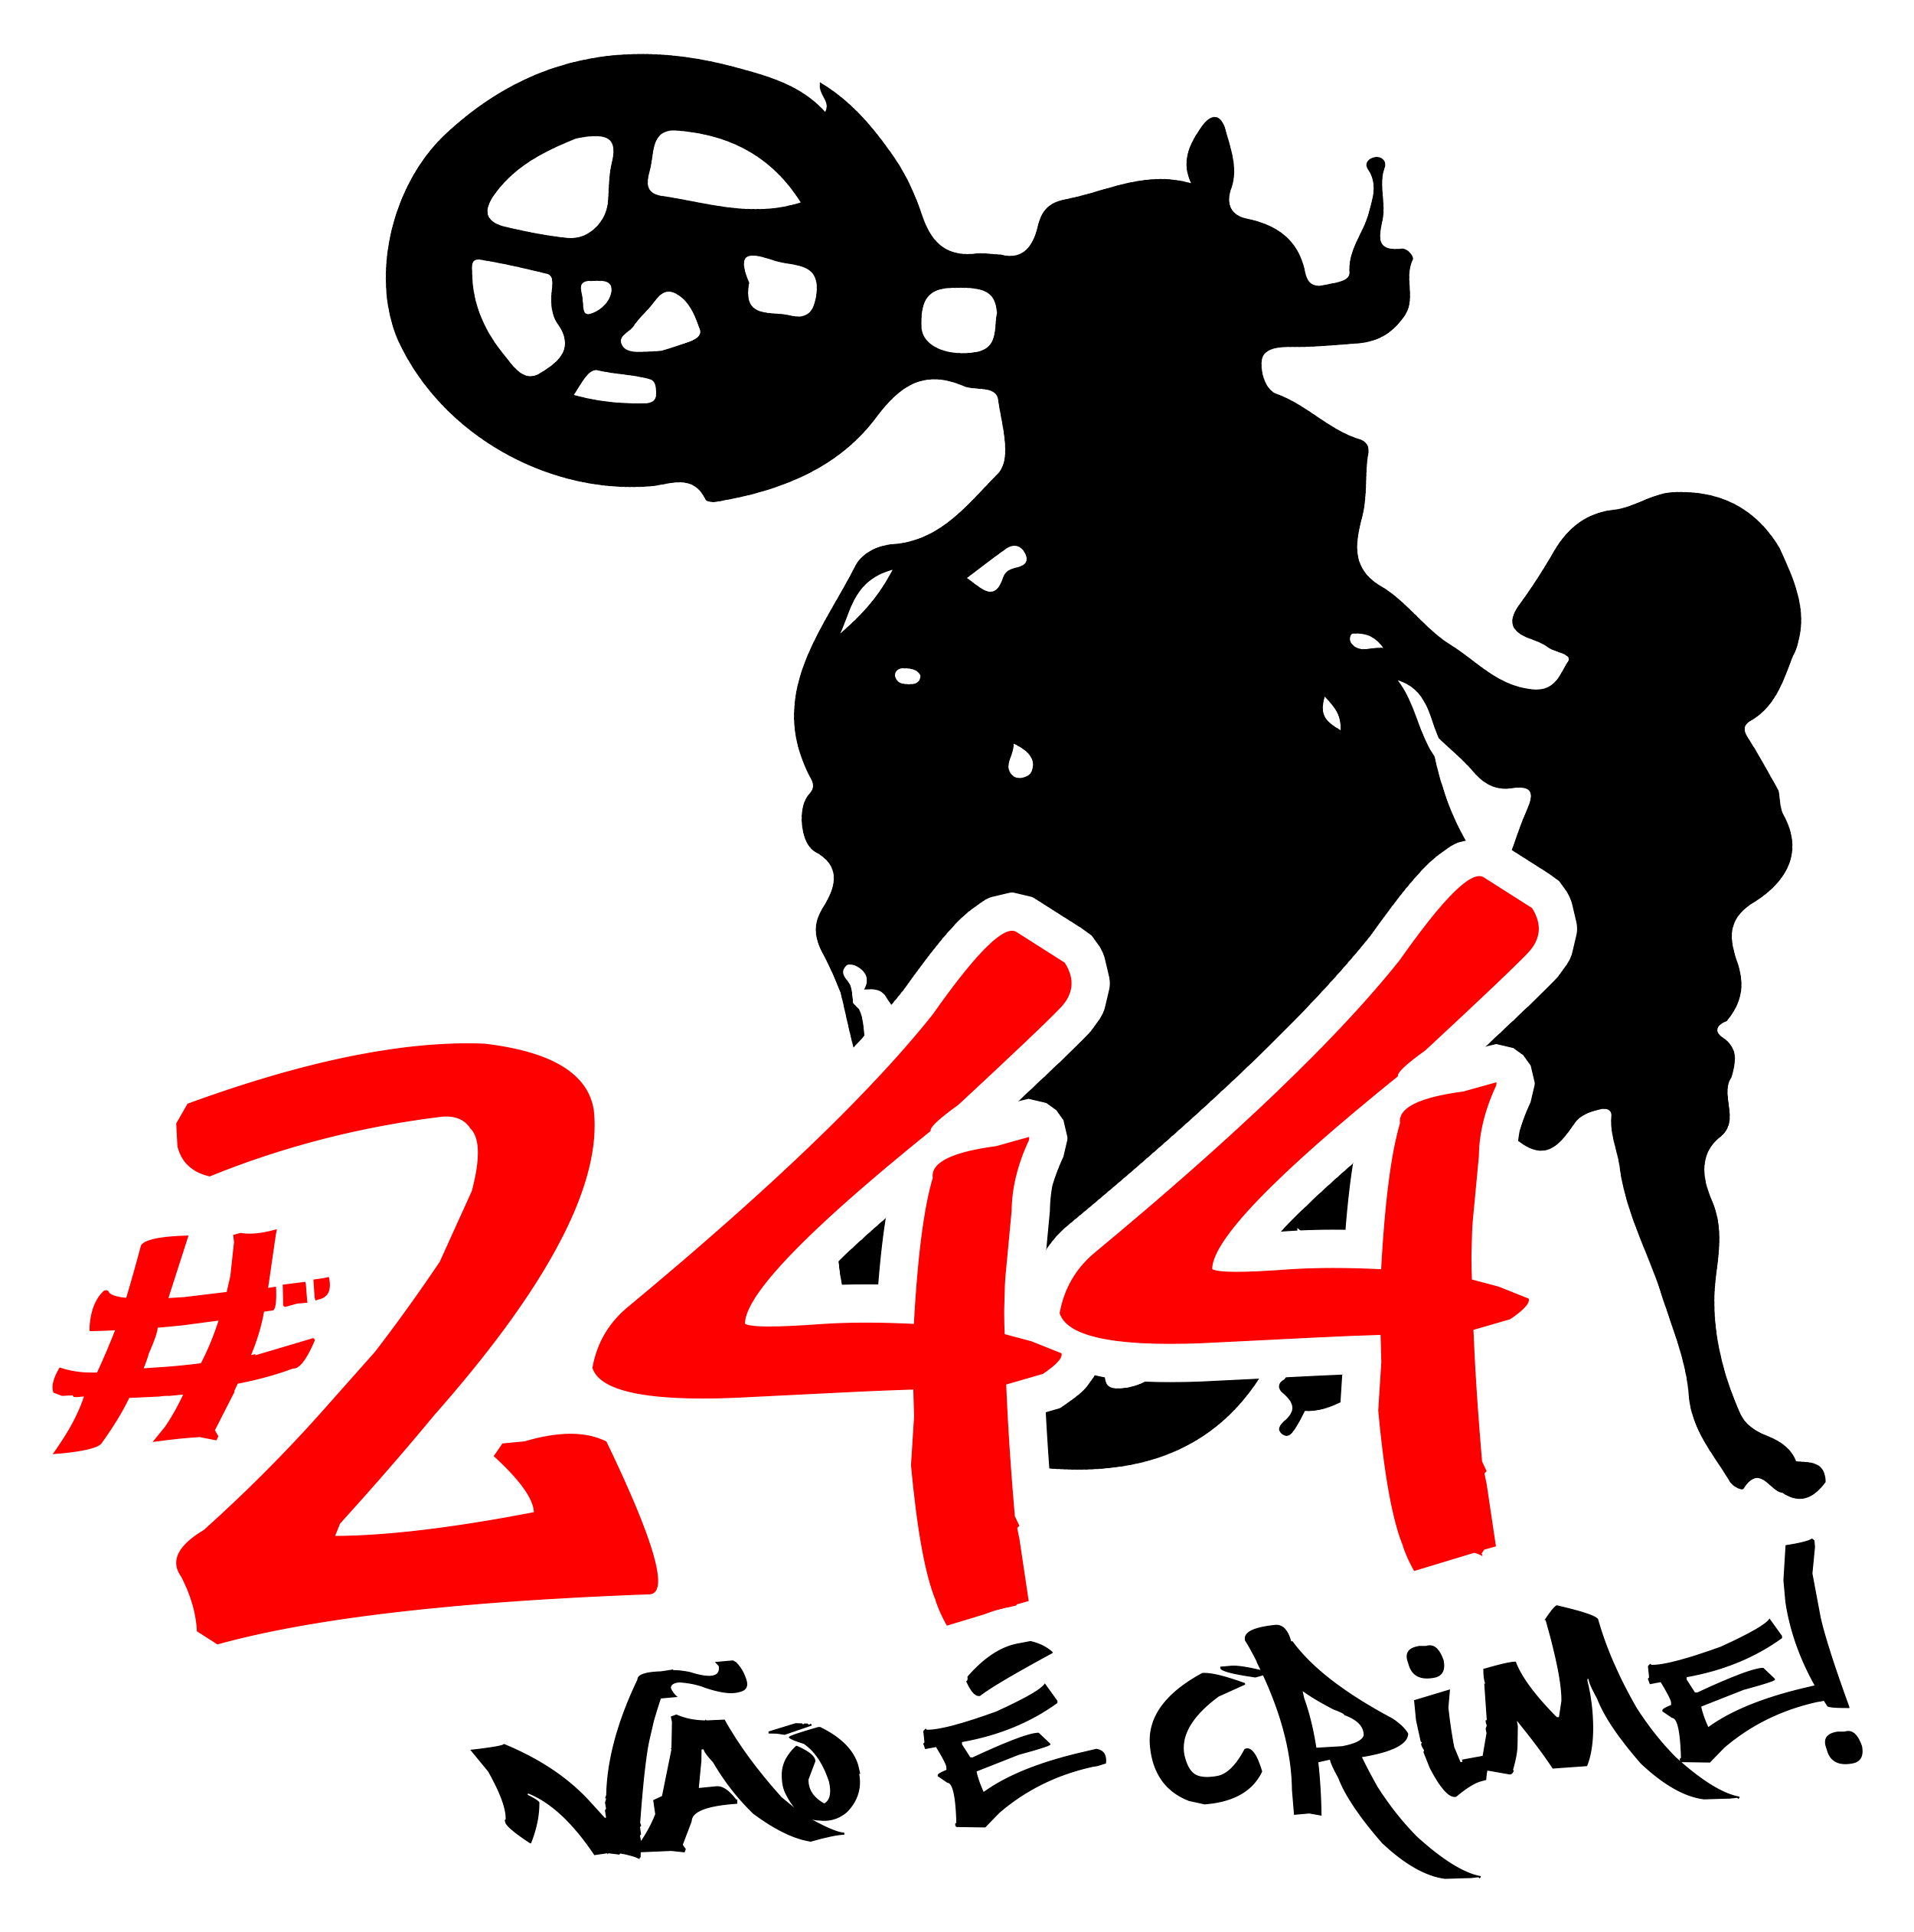 Camiseta 244 Não é Crime Grauzeiros Quadriculada Branco - Innove